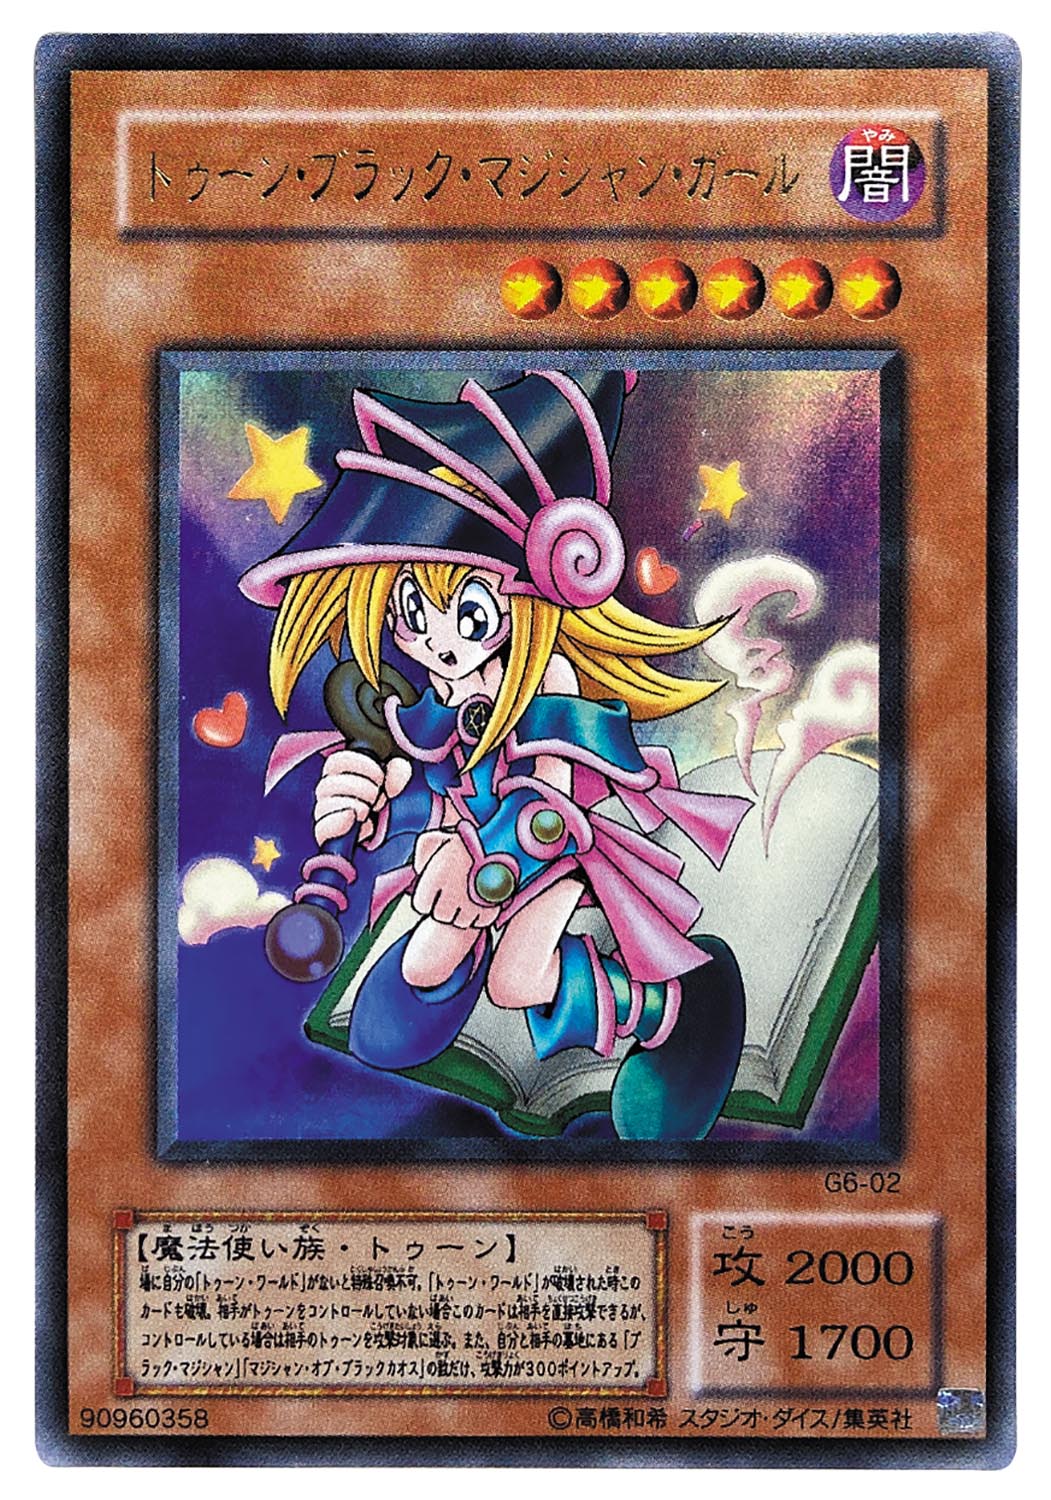 遊戯王カード トゥーン・ブラック・マジシャン・ガール G6-02 UR